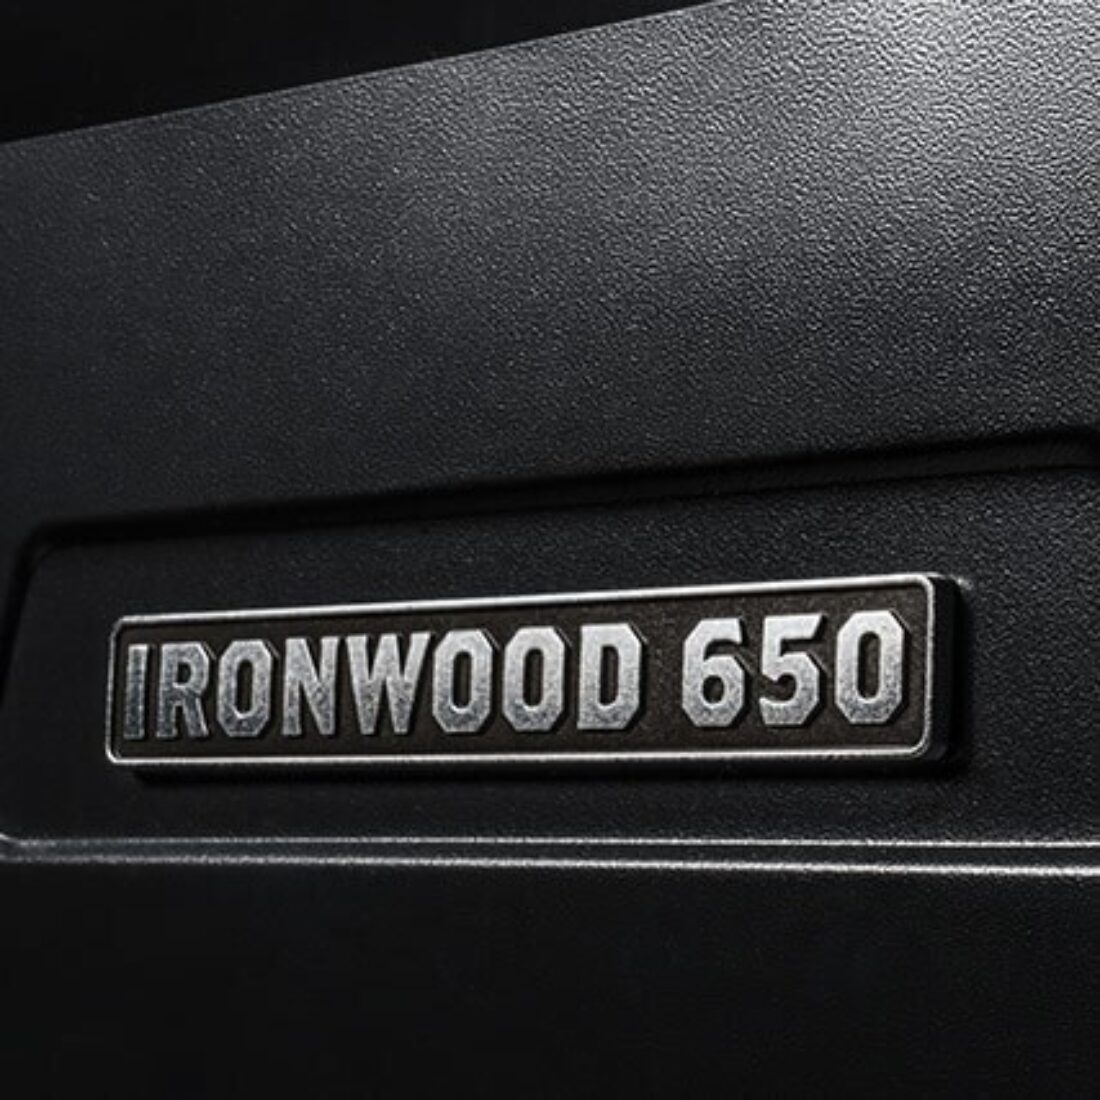 Ironwood 650 Badge